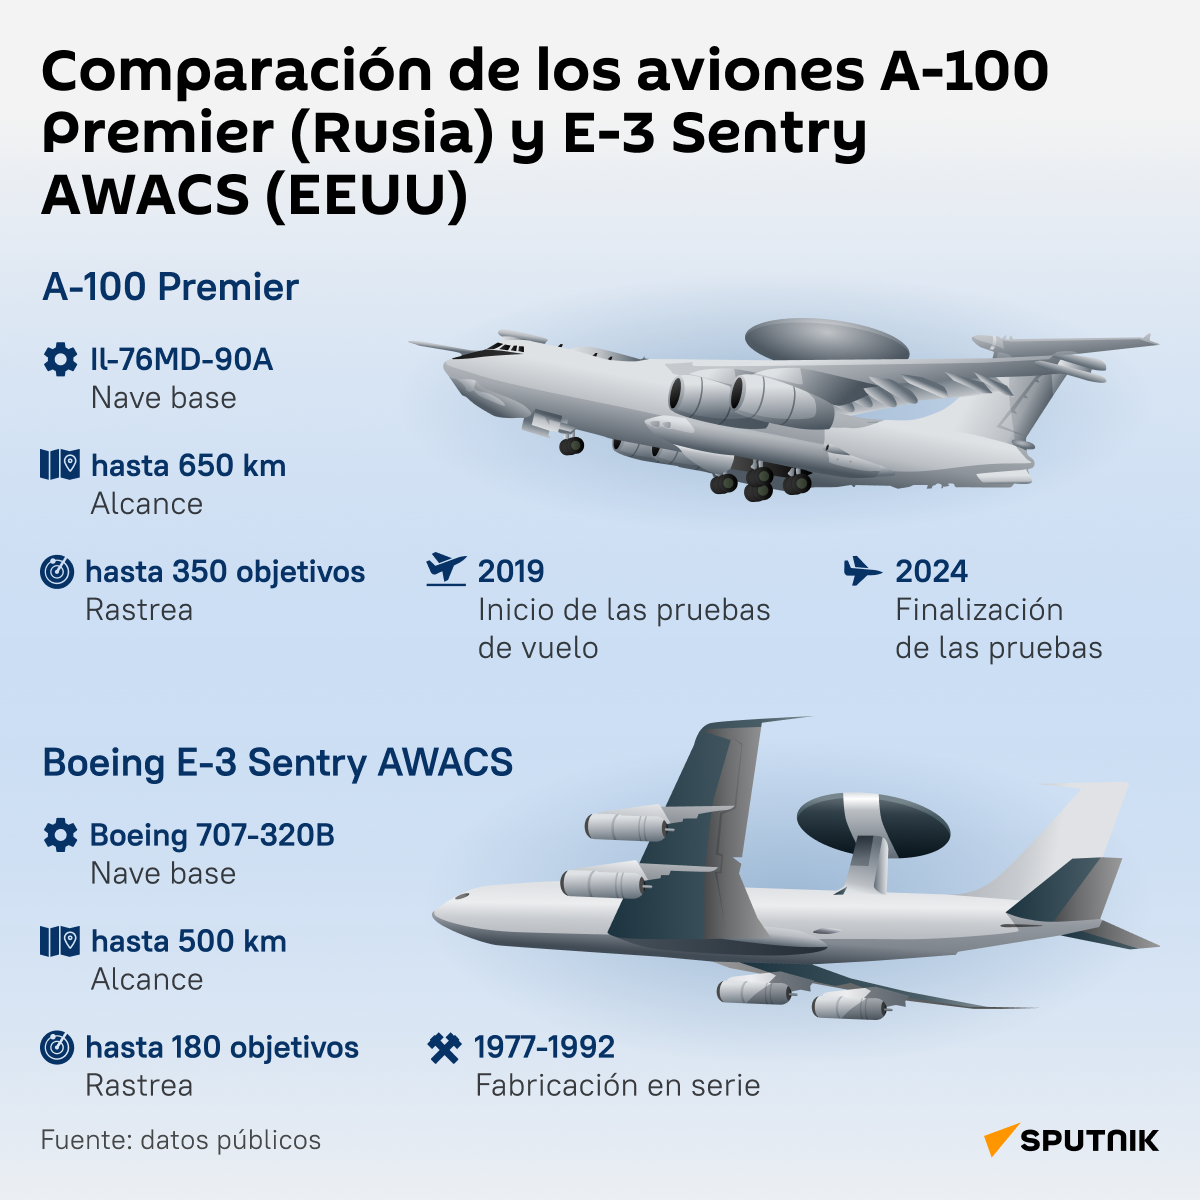 Comparación de los aviones A-100 Premier (Rusia) y E-3 Sentry AWACS (EEUU) - Sputnik Mundo